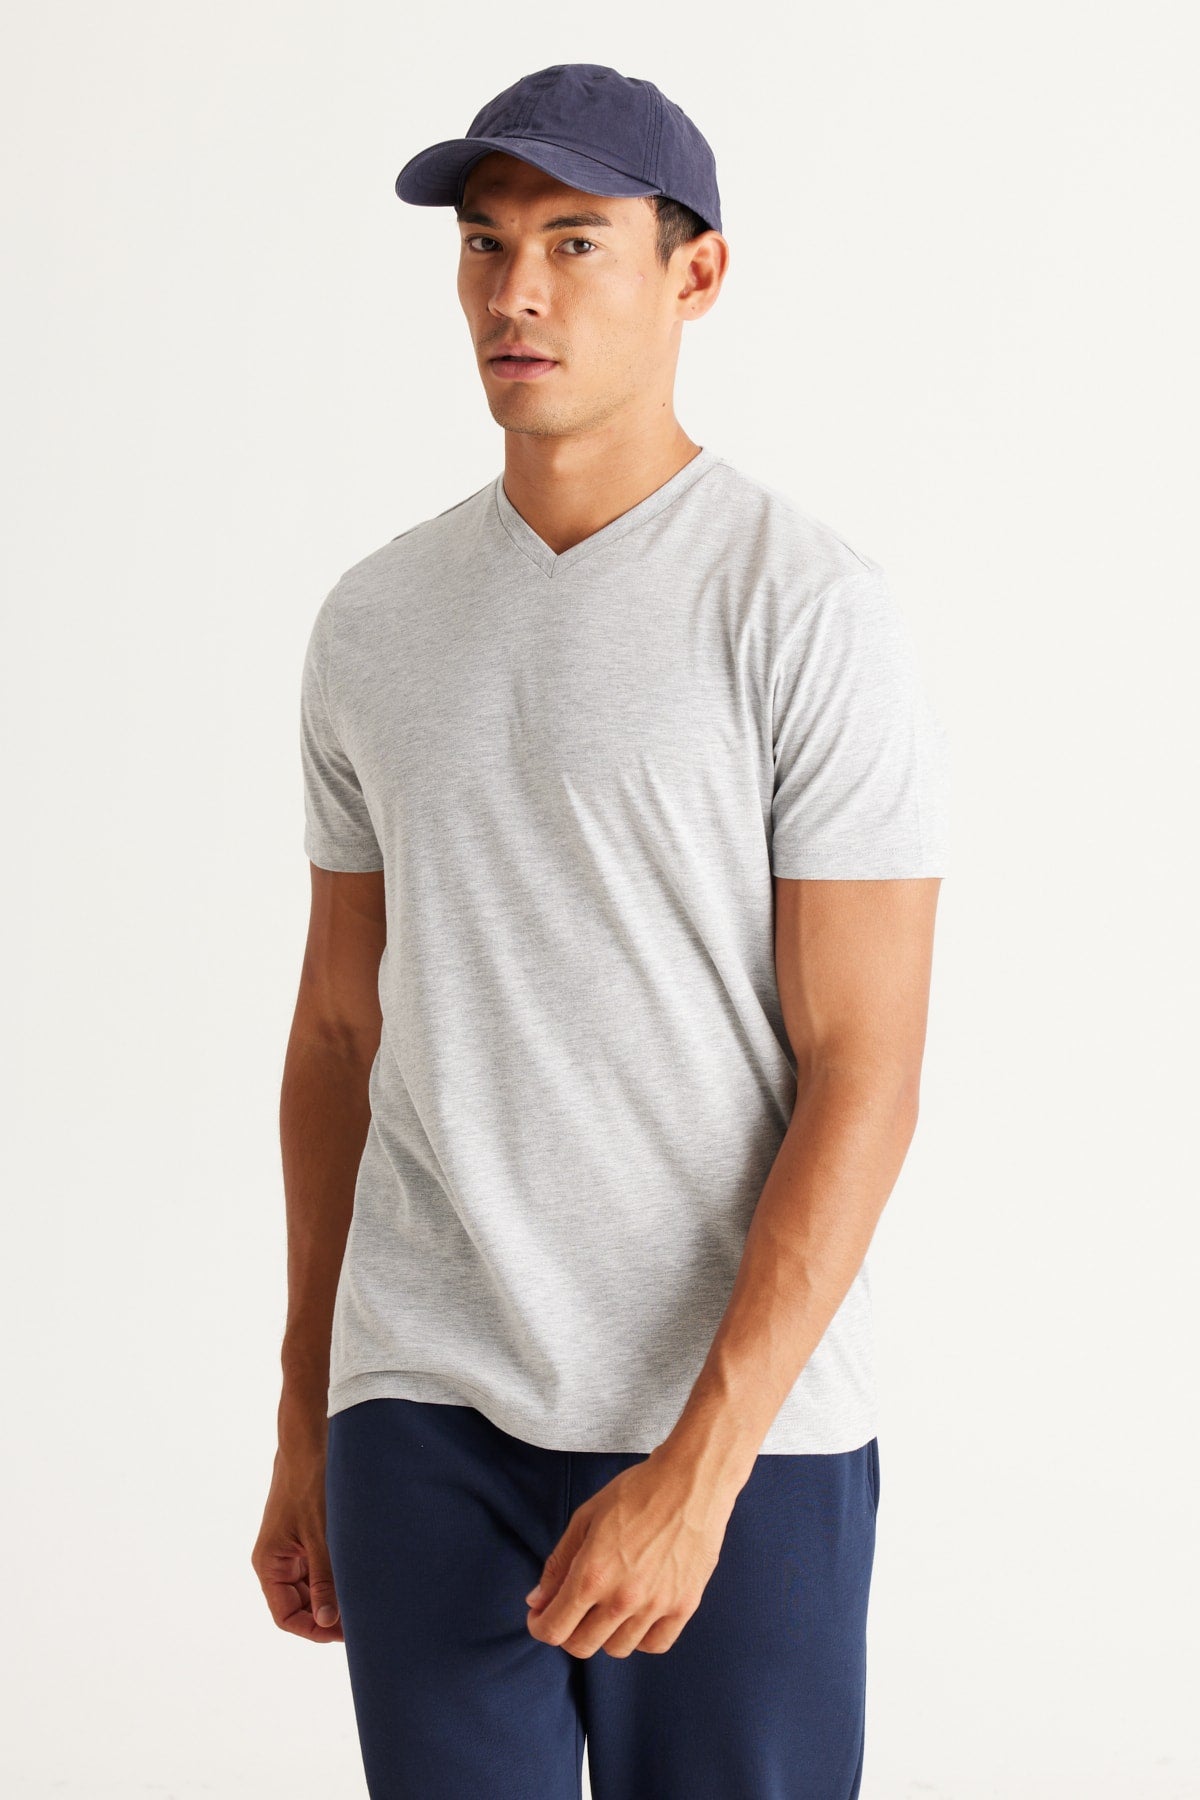 Men's Gray Melange Cotton Slim Fit Slim Fit V-Neck Short Sleeved T-Shirt